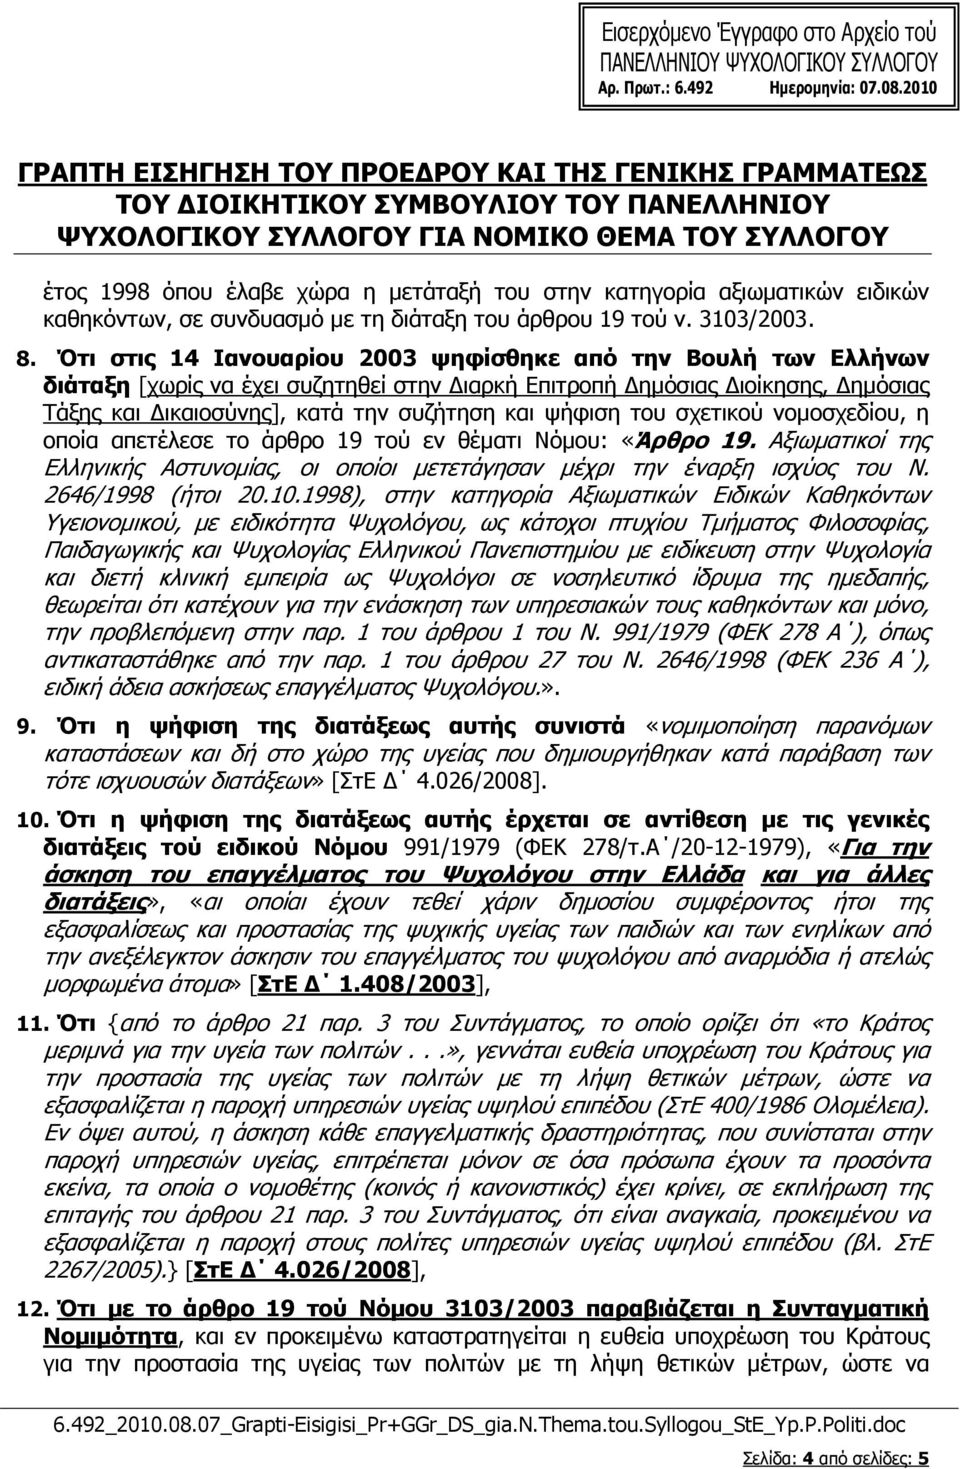 σχετικού νοµοσχεδίου, η οποία απετέλεσε το άρθρο 19 τού εν θέµατι Νόµου: «Άρθρο 19. Αξιωµατικοί της Ελληνικής Αστυνοµίας, οι οποίοι µετετάγησαν µέχρι την έναρξη ισχύος του Ν. 2646/1998 (ήτοι 20.10.